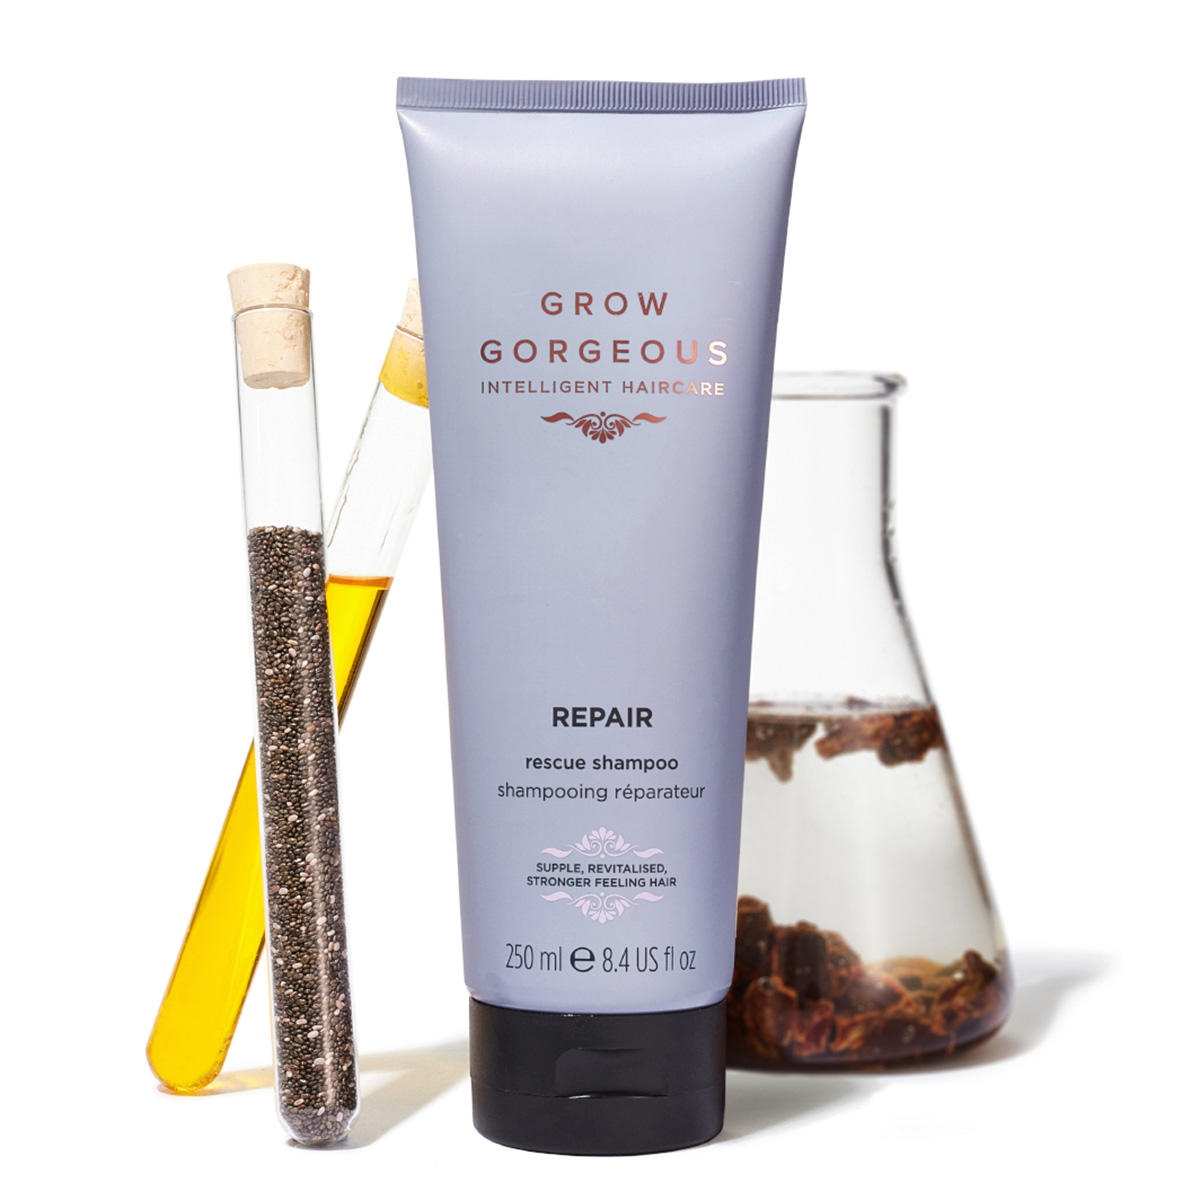 GROW GORGEOUS Repair Rescue Shampoo 250 ml - 5